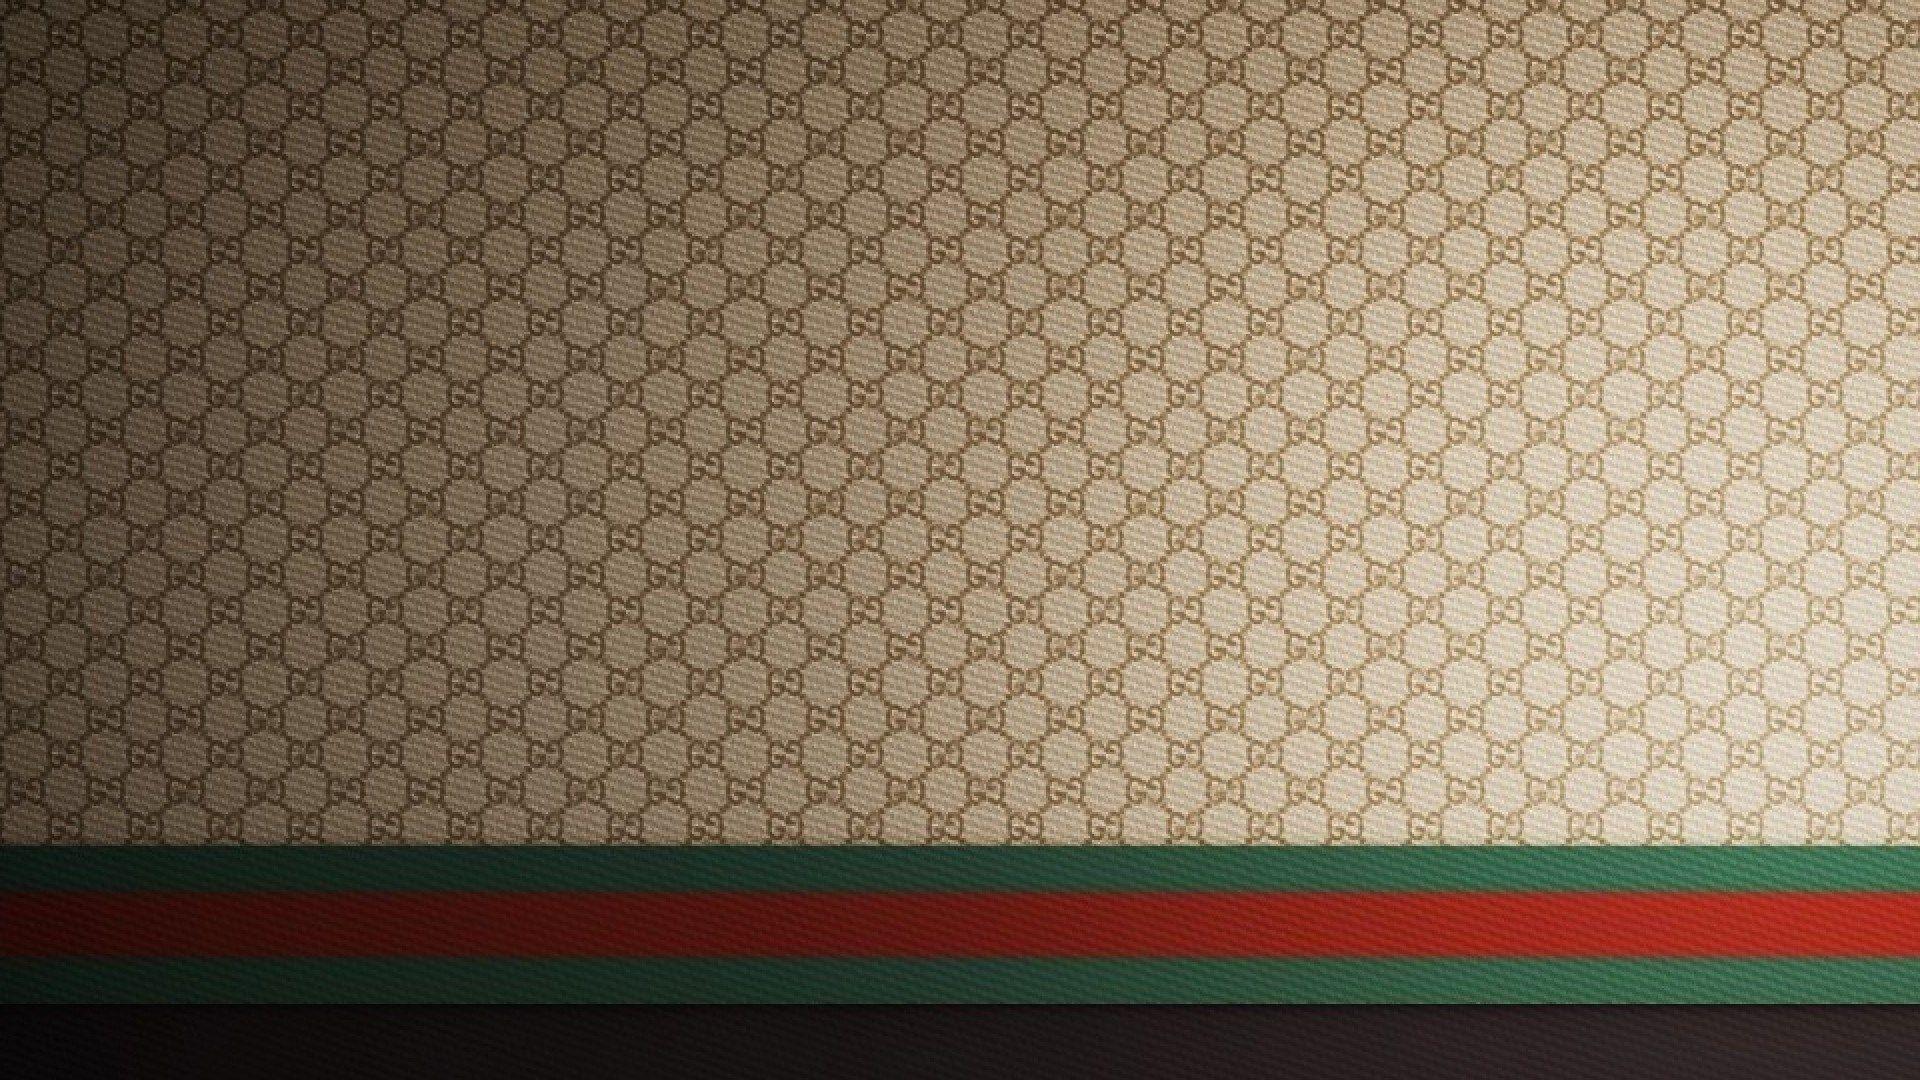 Gucci Pattern Wallpapers - Top Hình Ảnh Đẹp